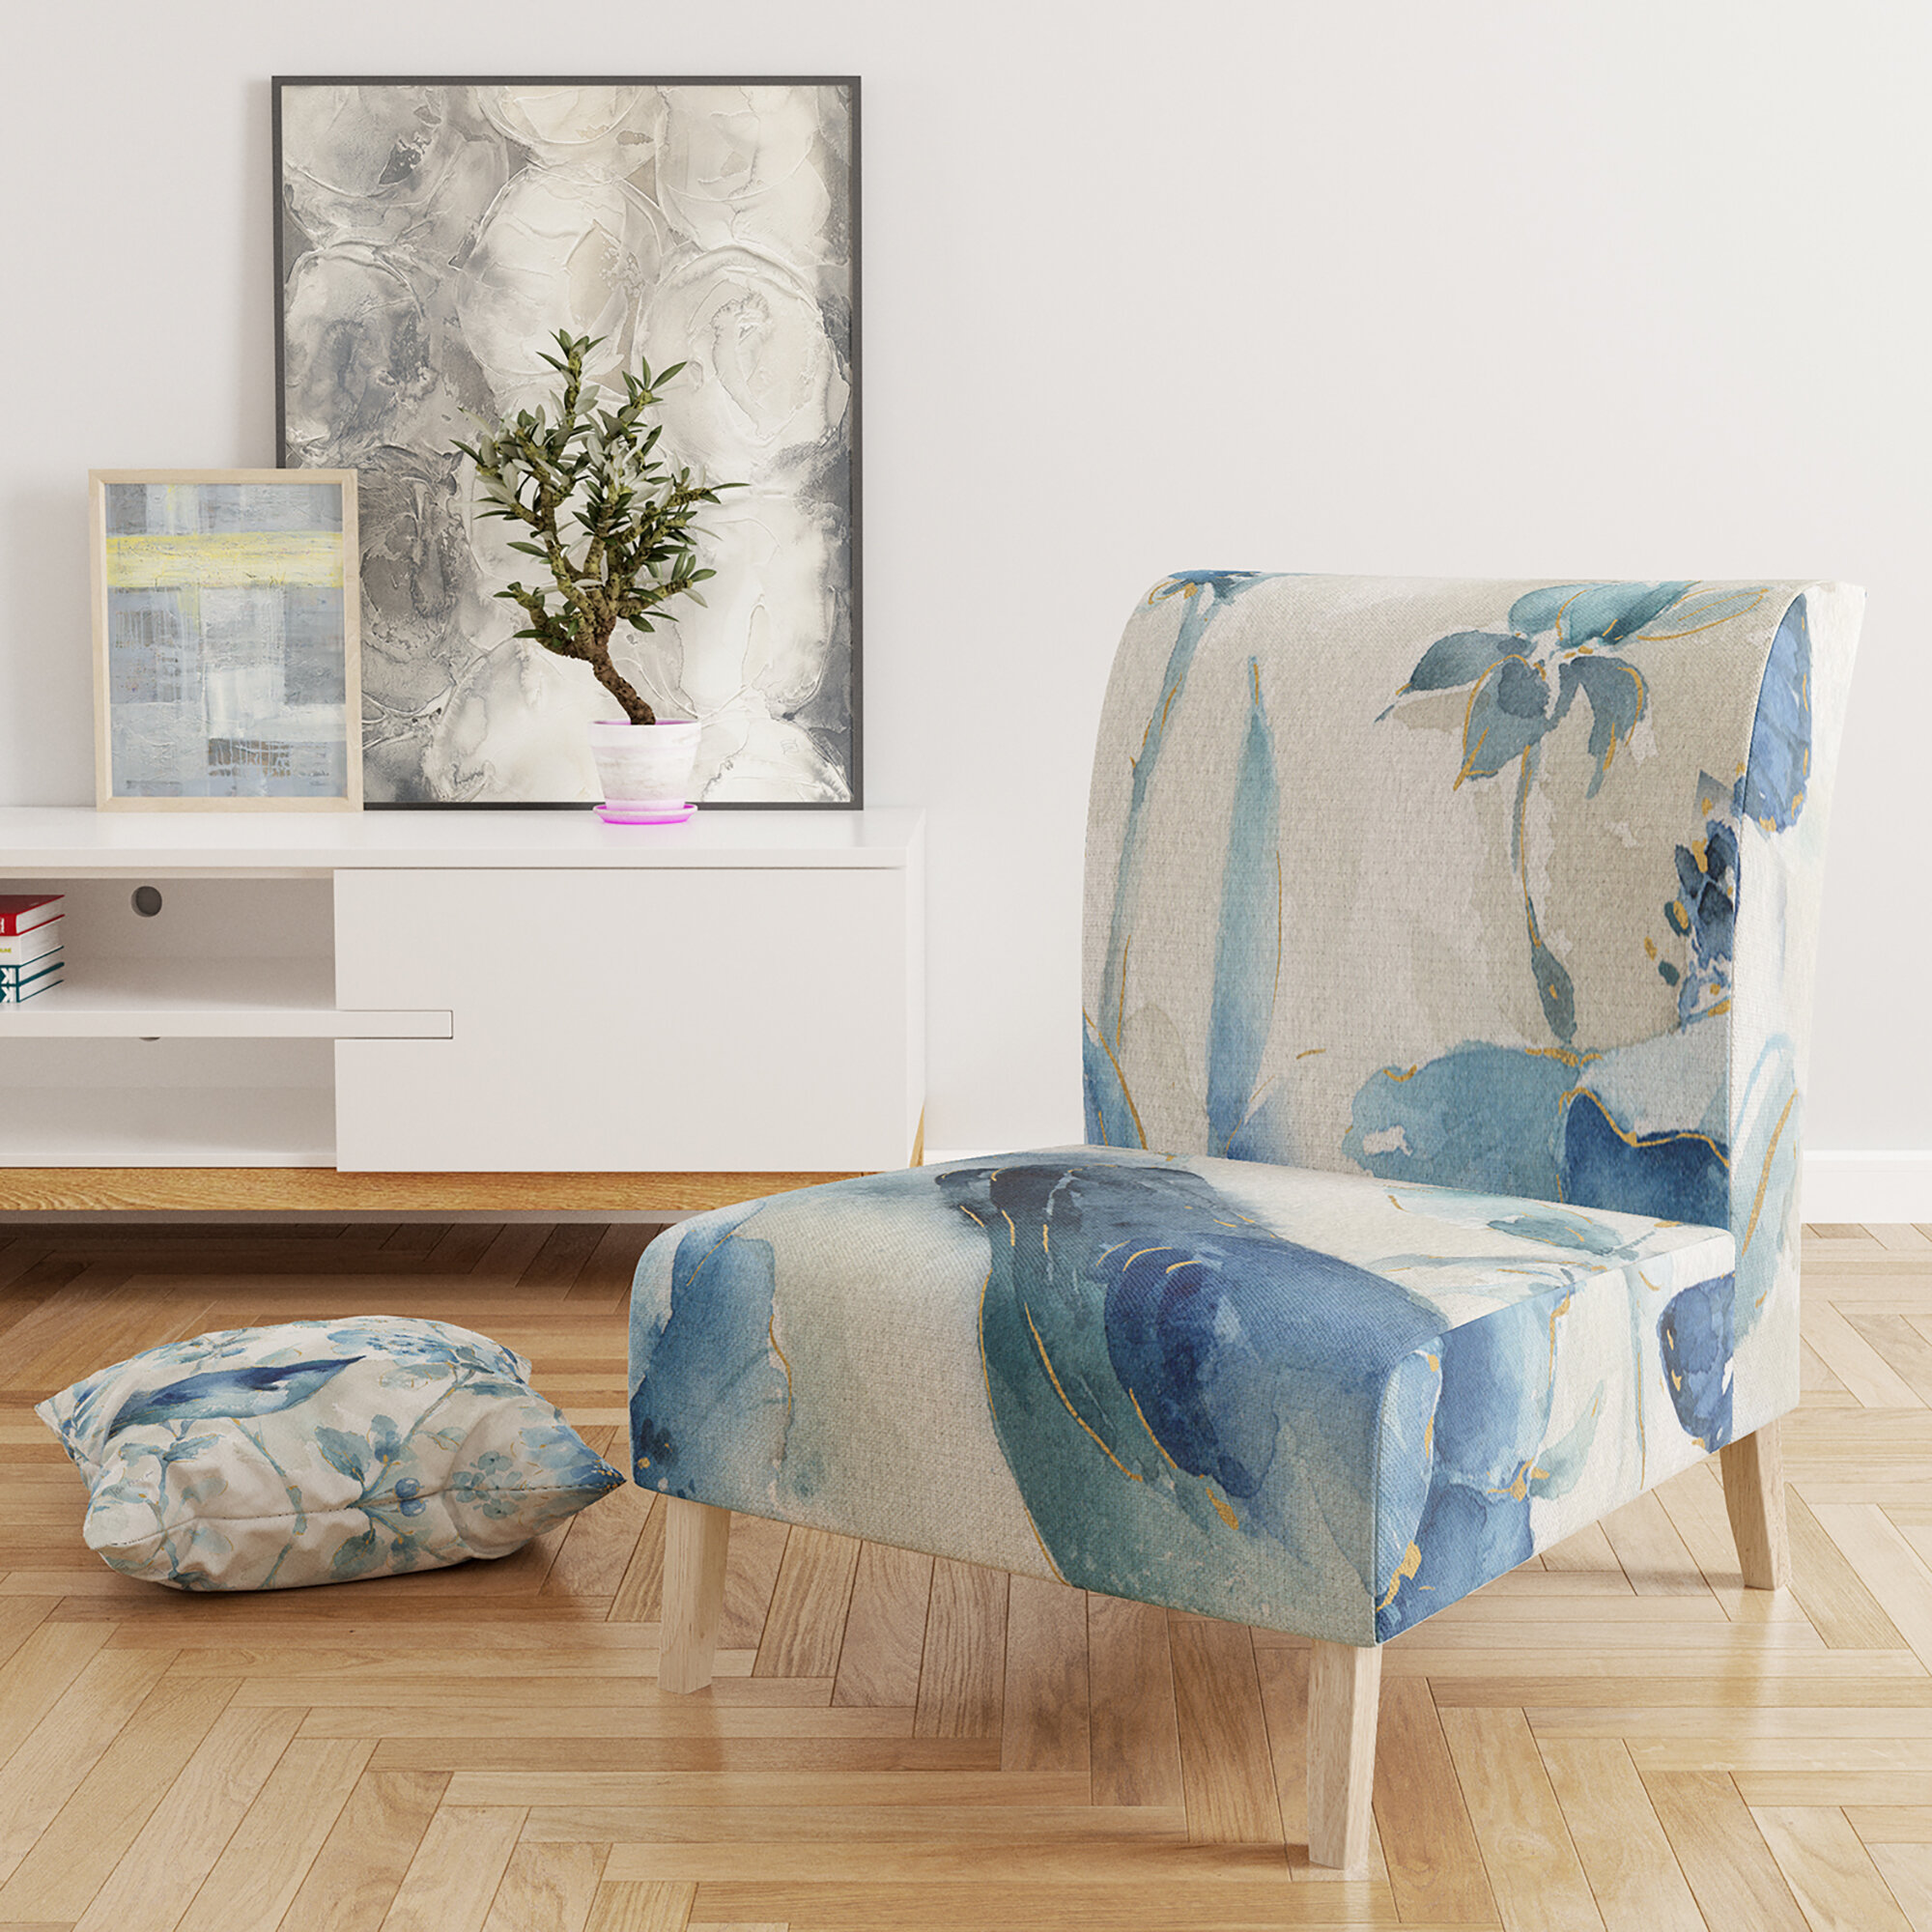 Bella Slipcover Sofa Cottage Furniture - Club Furniture